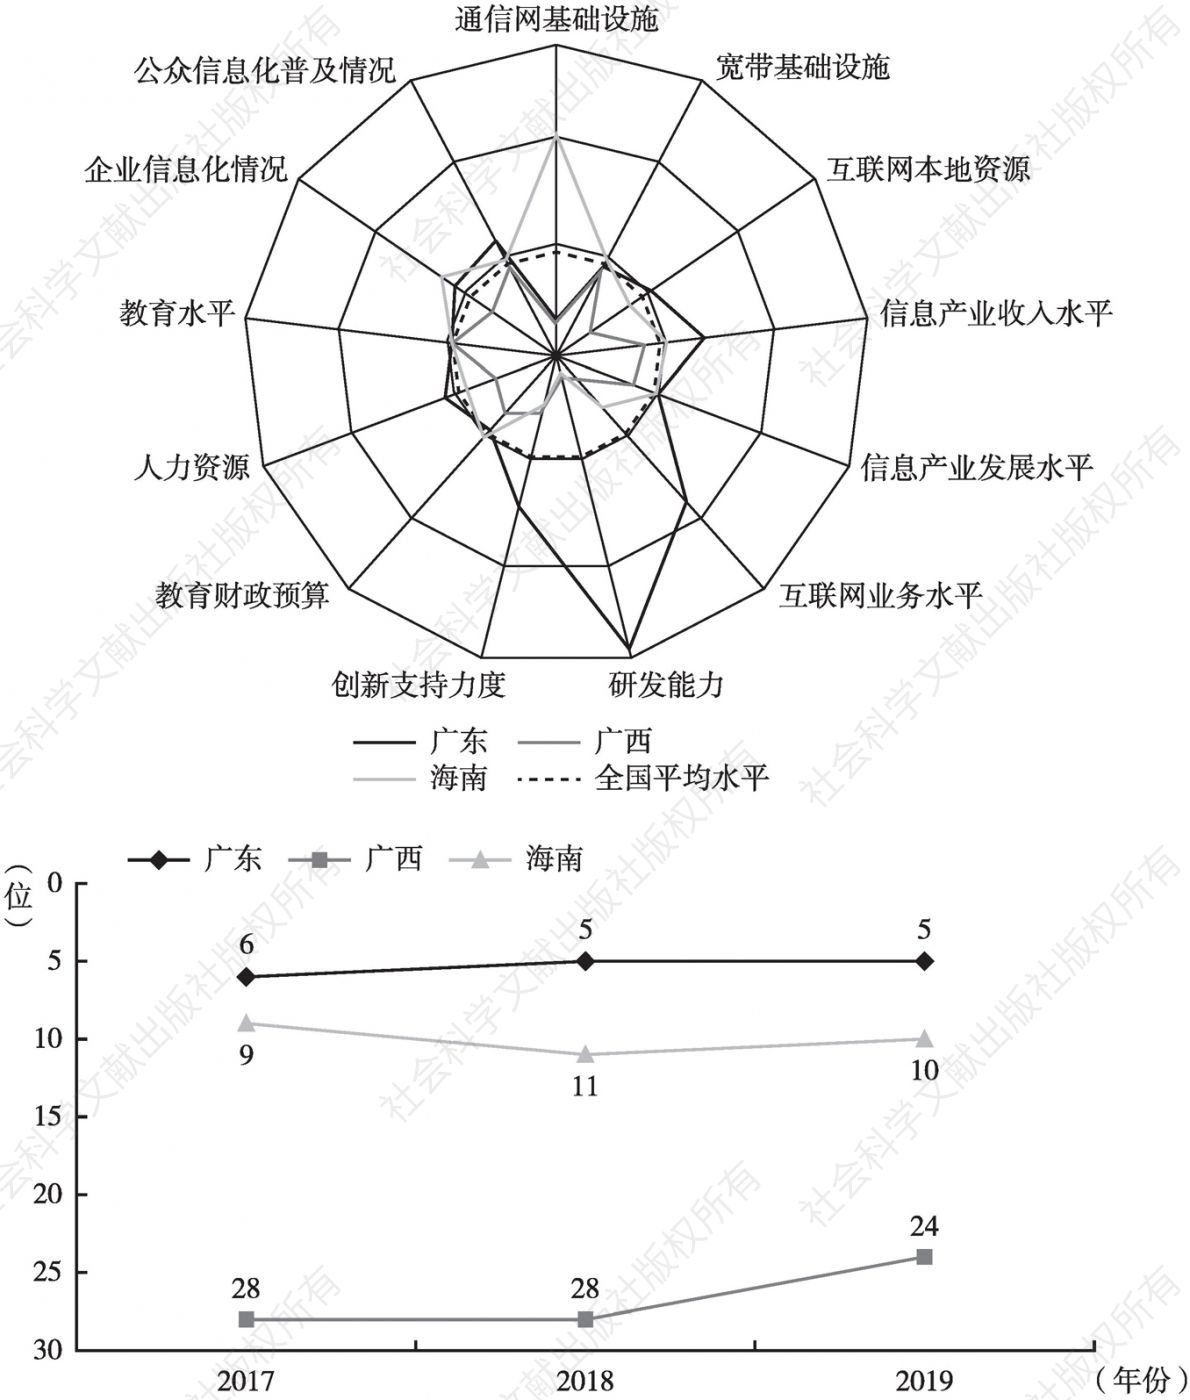 图18 华南地区二级指标雷达图和排名情况